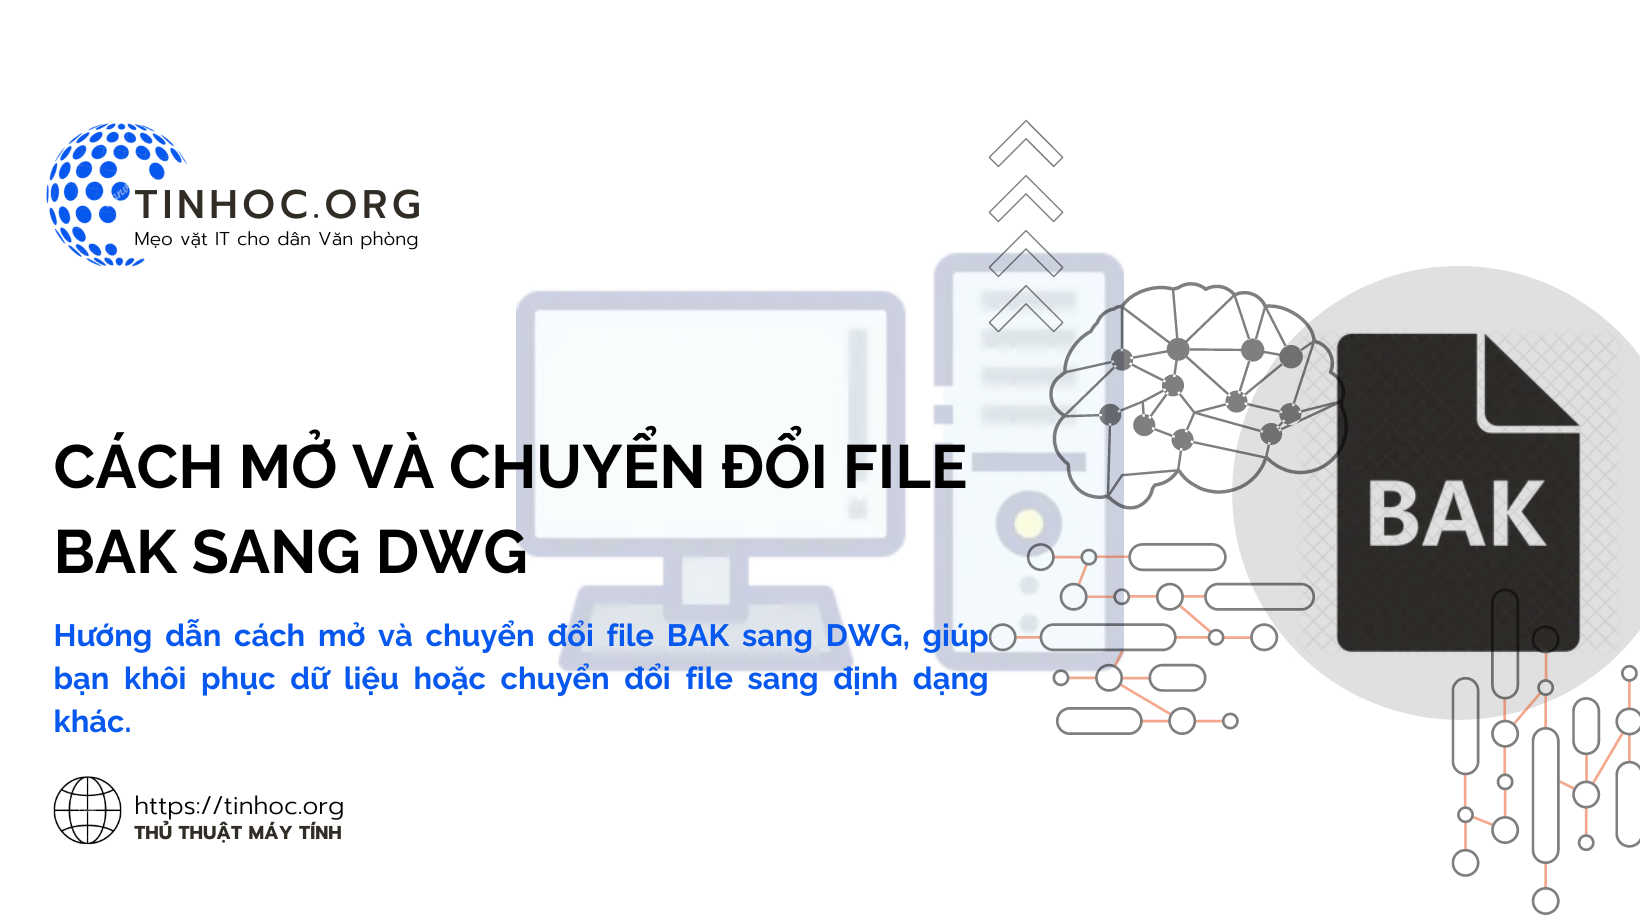 Cách mở và chuyển đổi file BAK sang DWG